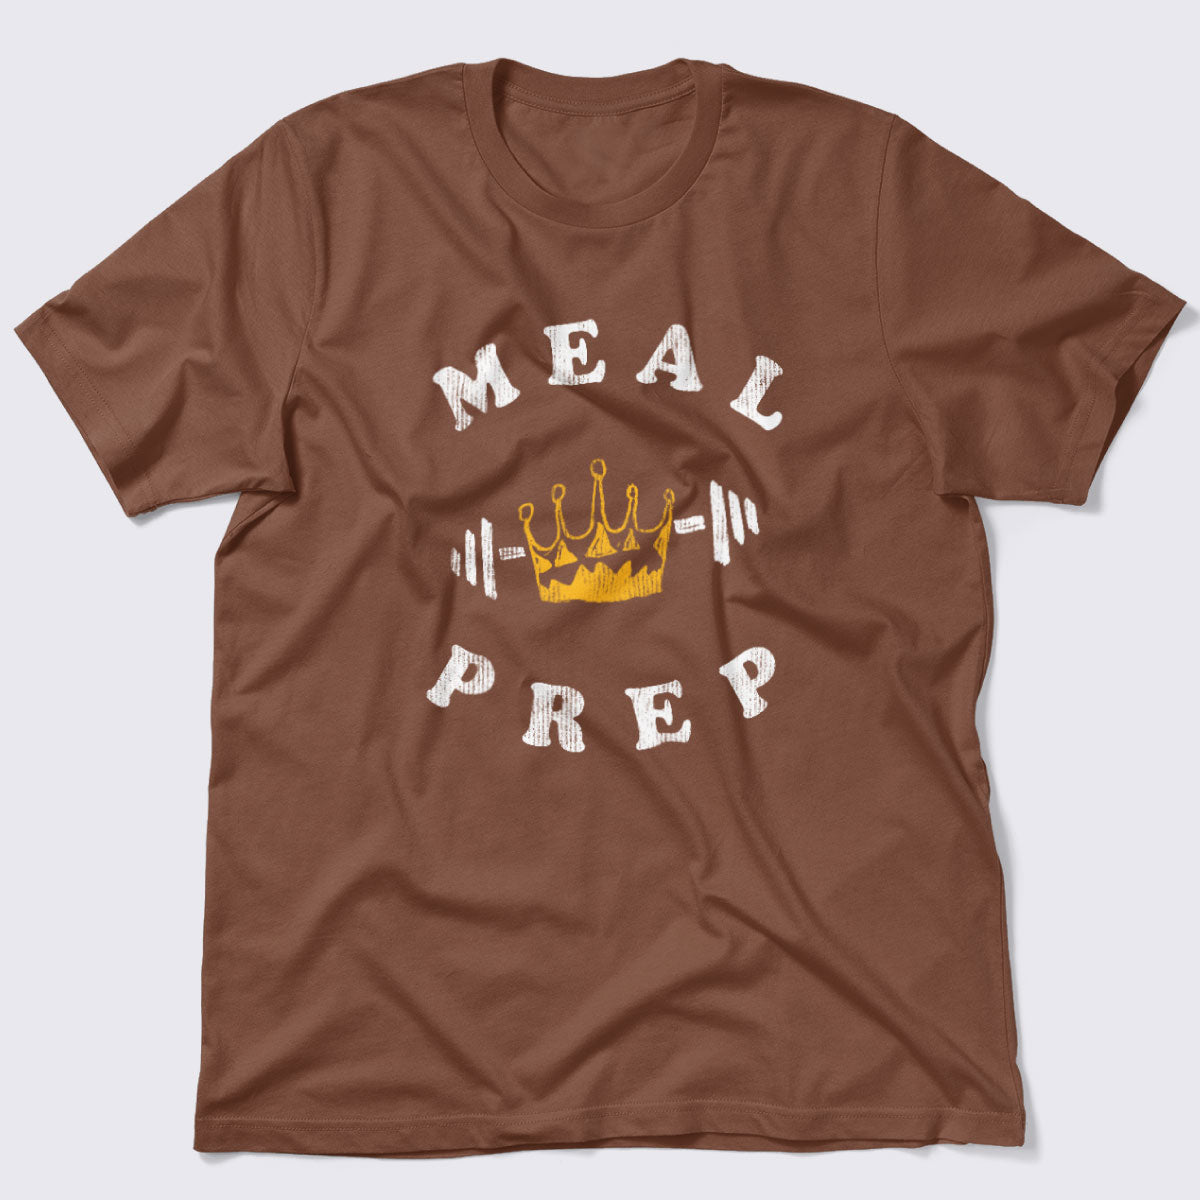 Meal Prep Queen / King Unisex Jersey Tee